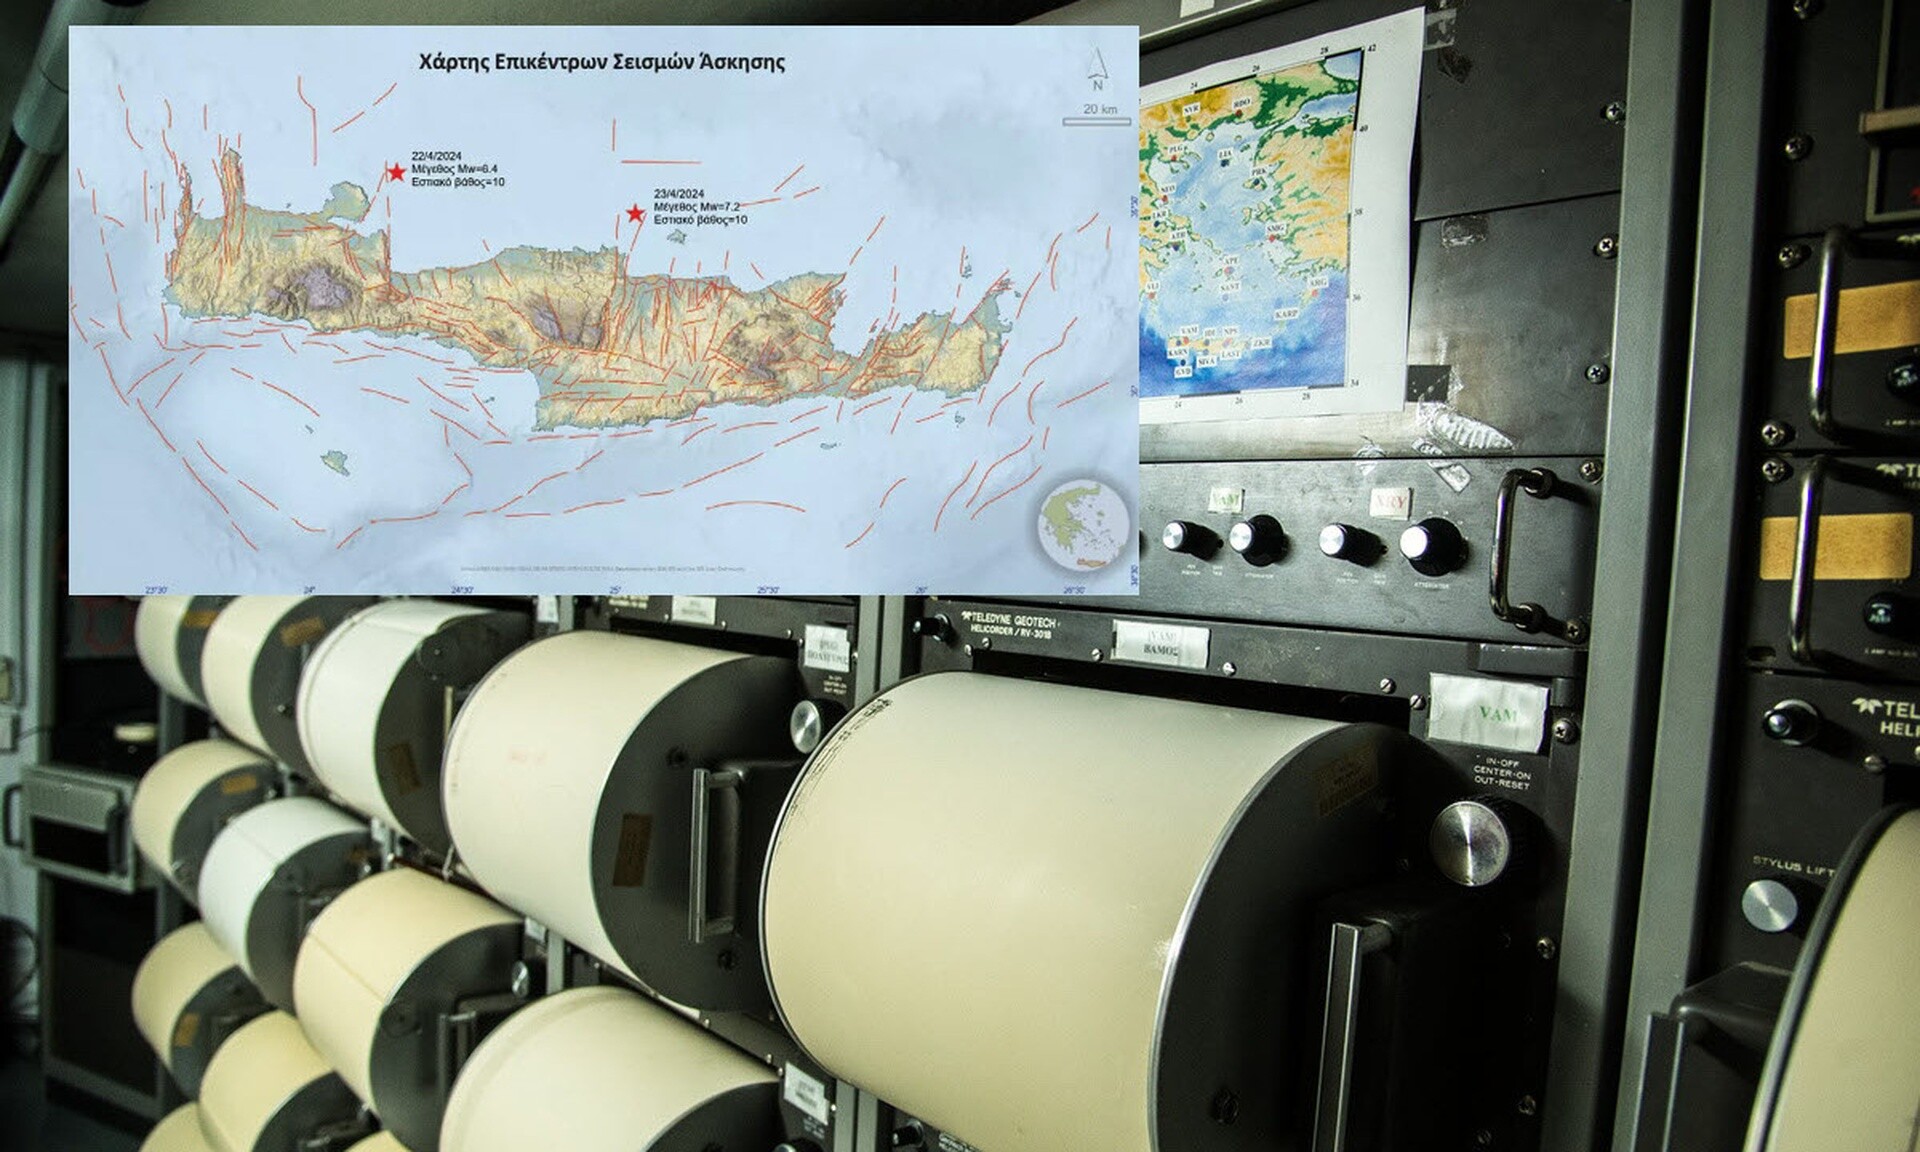 Άσκηση Μίνωας: Σενάριο για σεισμό 6,4 και 7,2 Ρίχτερ που θα «χτυπήσουν» την Κρήτη